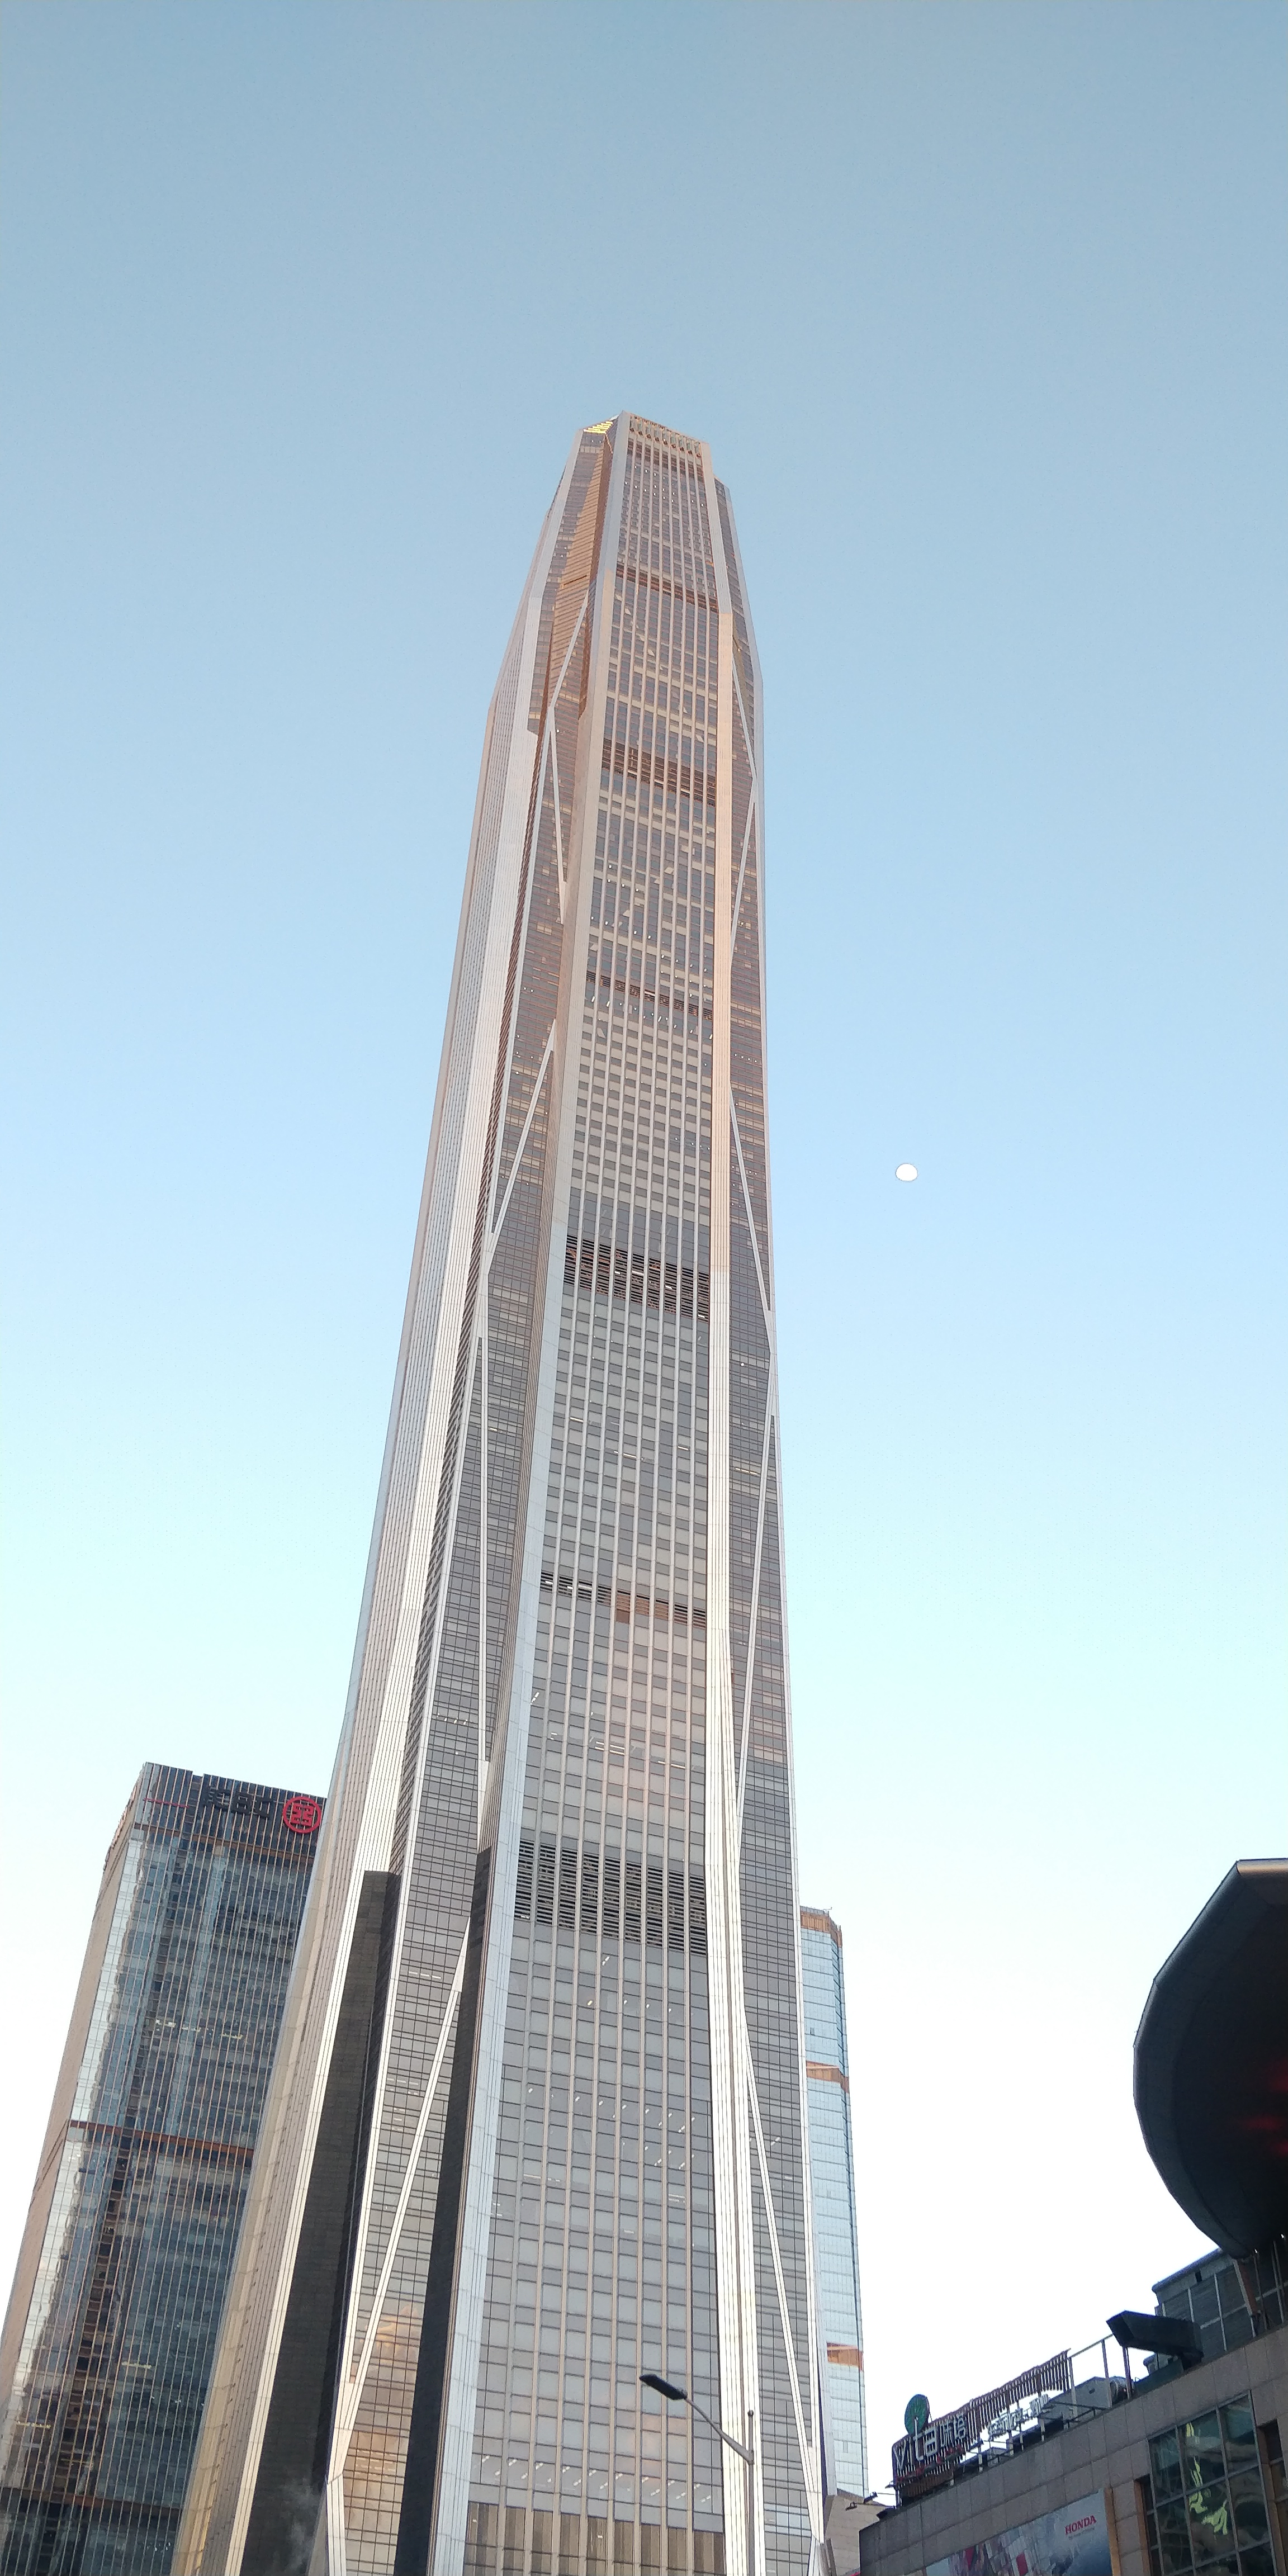 世界第九高楼深圳平安金融中心大厦:总高度5925米,主体高度5555米